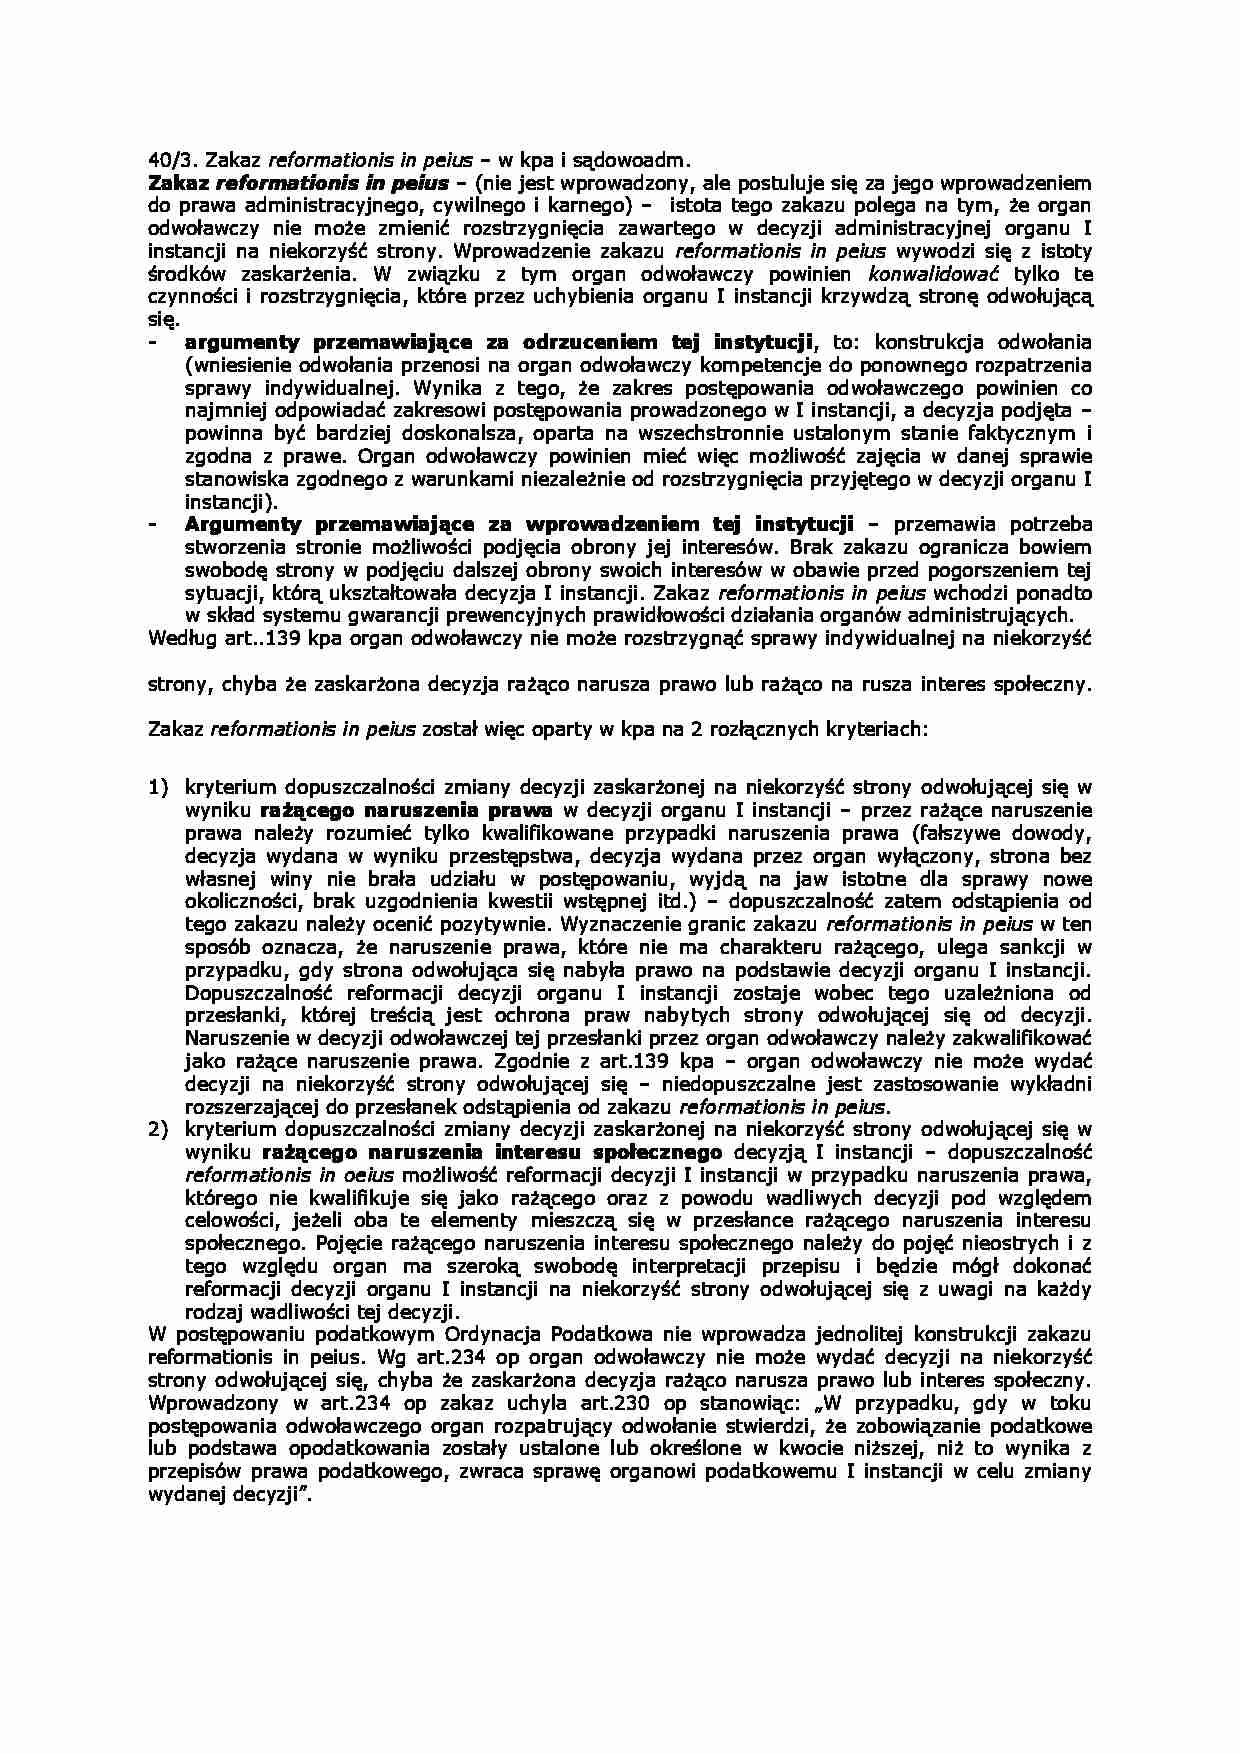 Zakaz reformationis in peius-opracowanie - strona 1